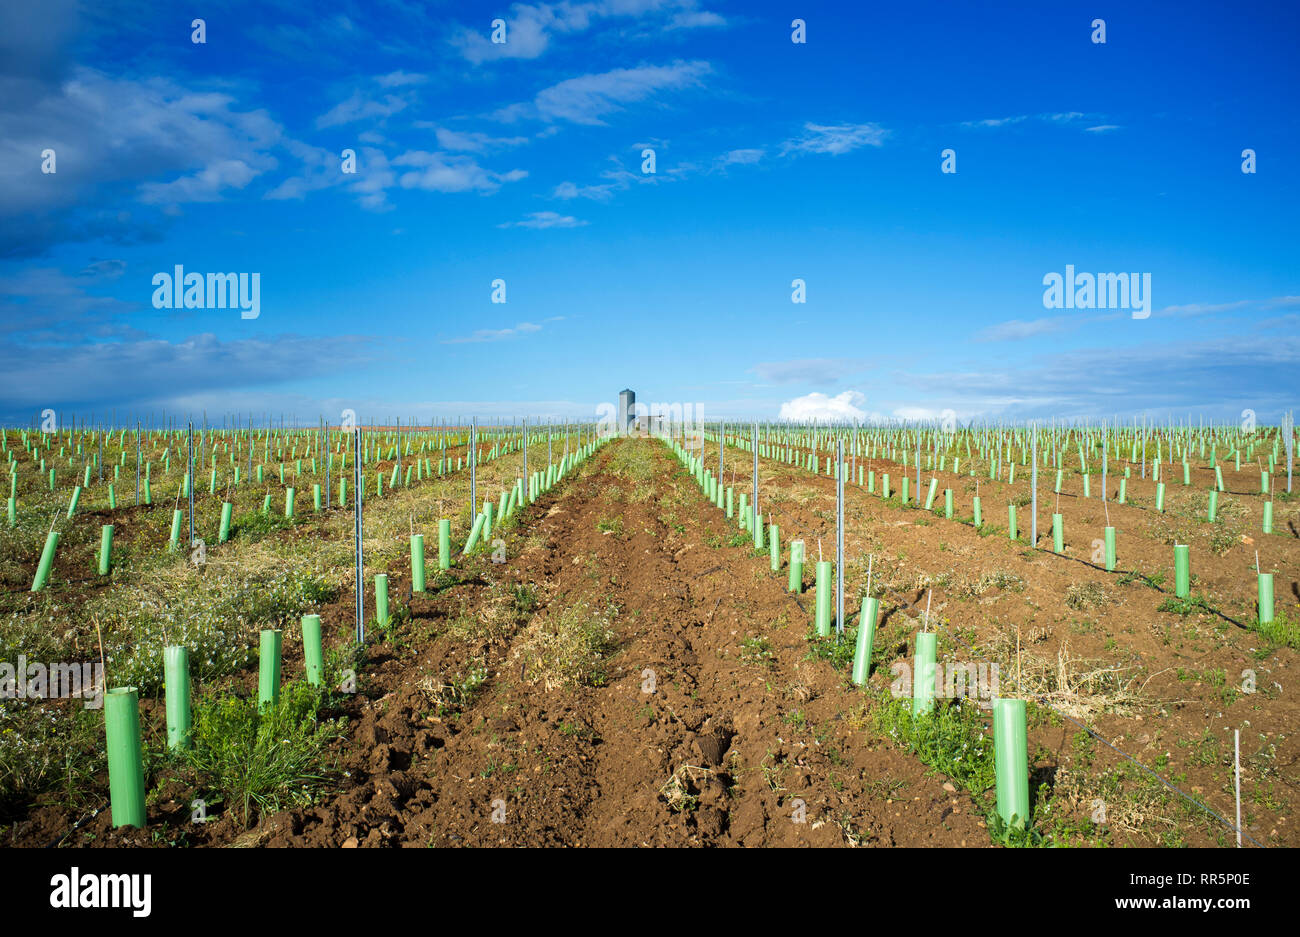 Rangées de vignes protégées par un abri bourgeons d'arbres et de tubes irriguée par des gouttes. Tierra de Barros, Estrémadure, Espagne Banque D'Images